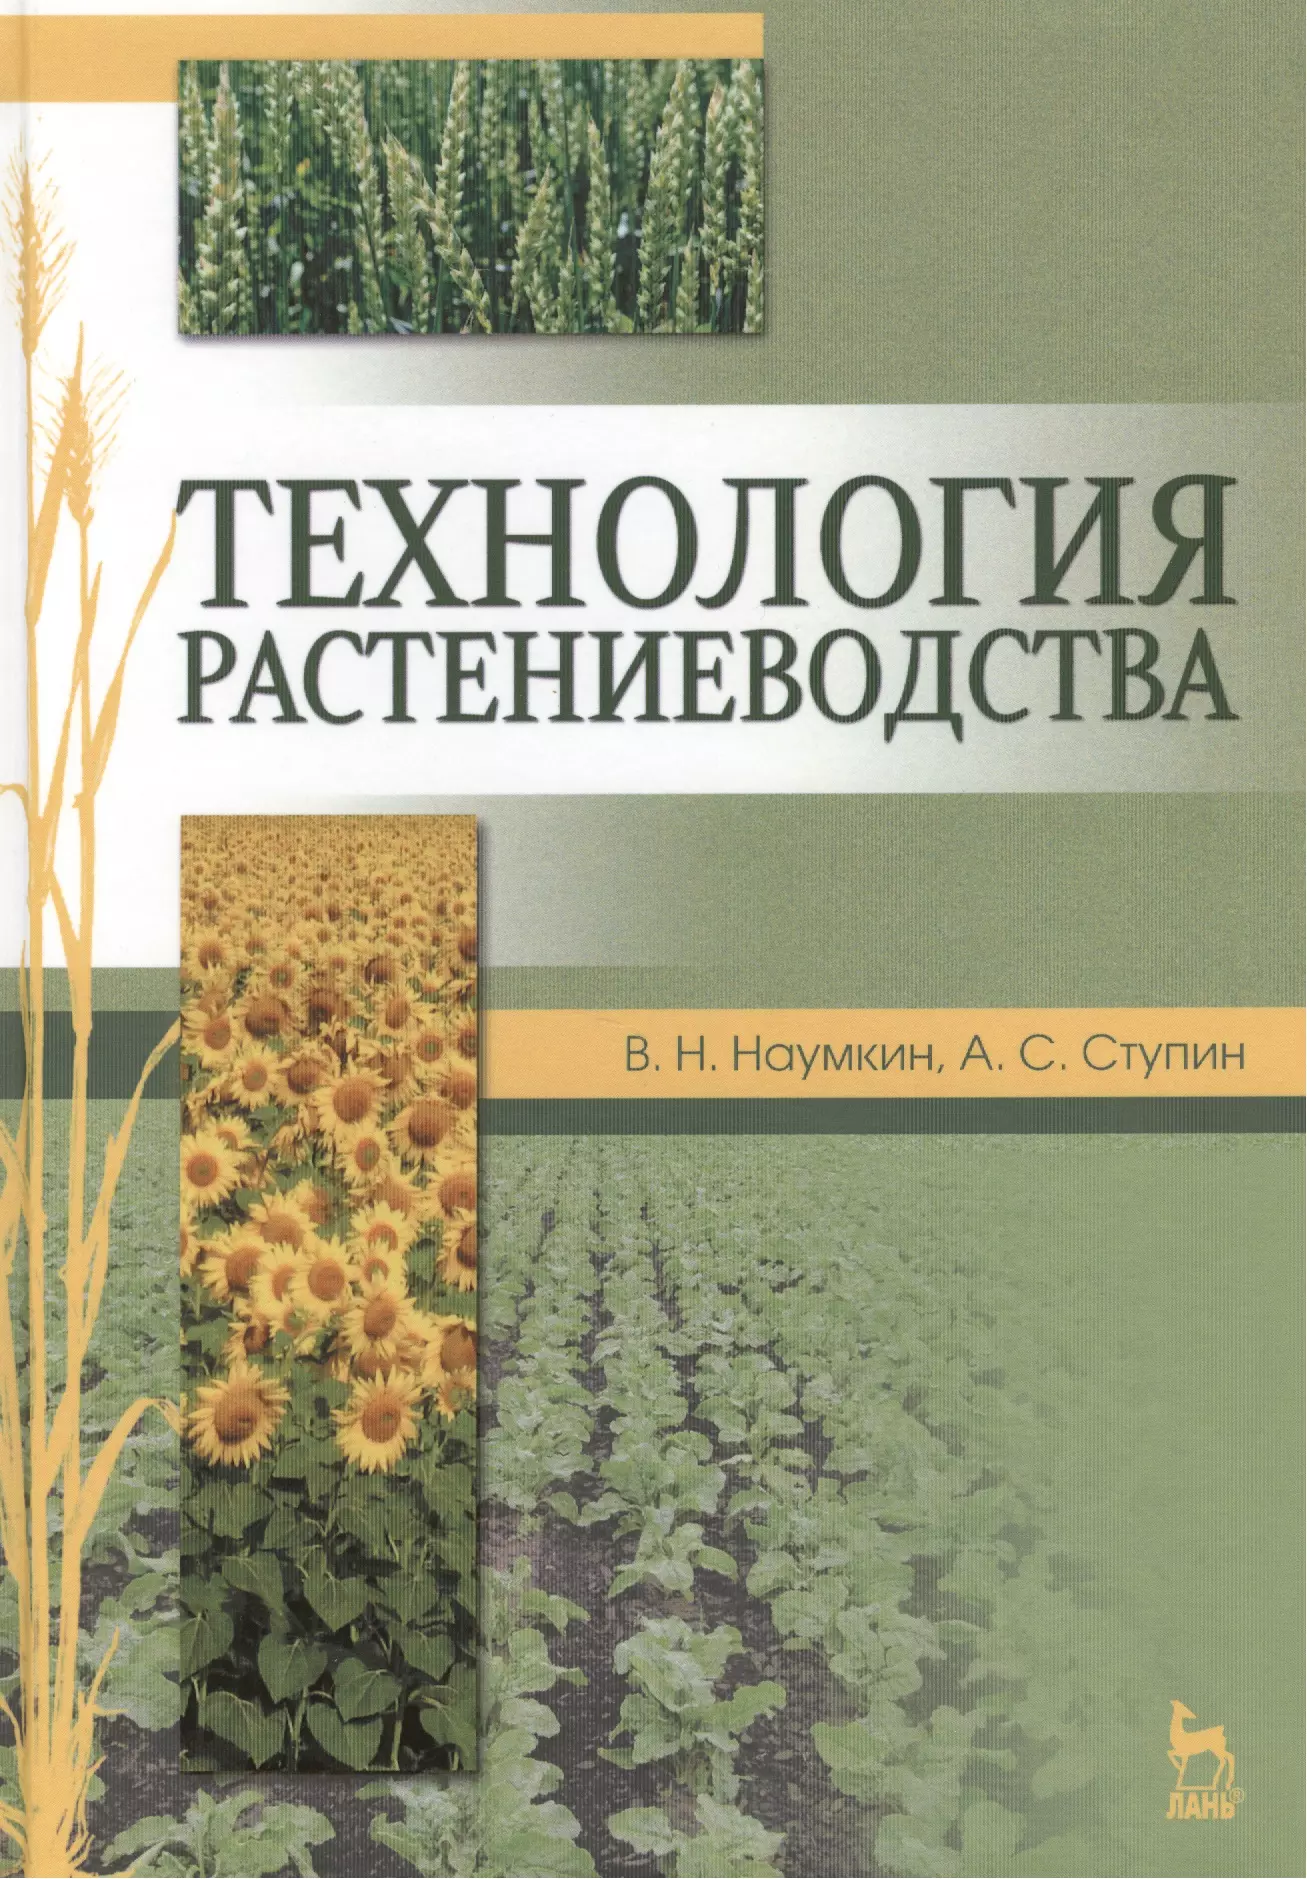 Наумкин Виктор Николаевич - Технология растениеводства. Учебн. пос.